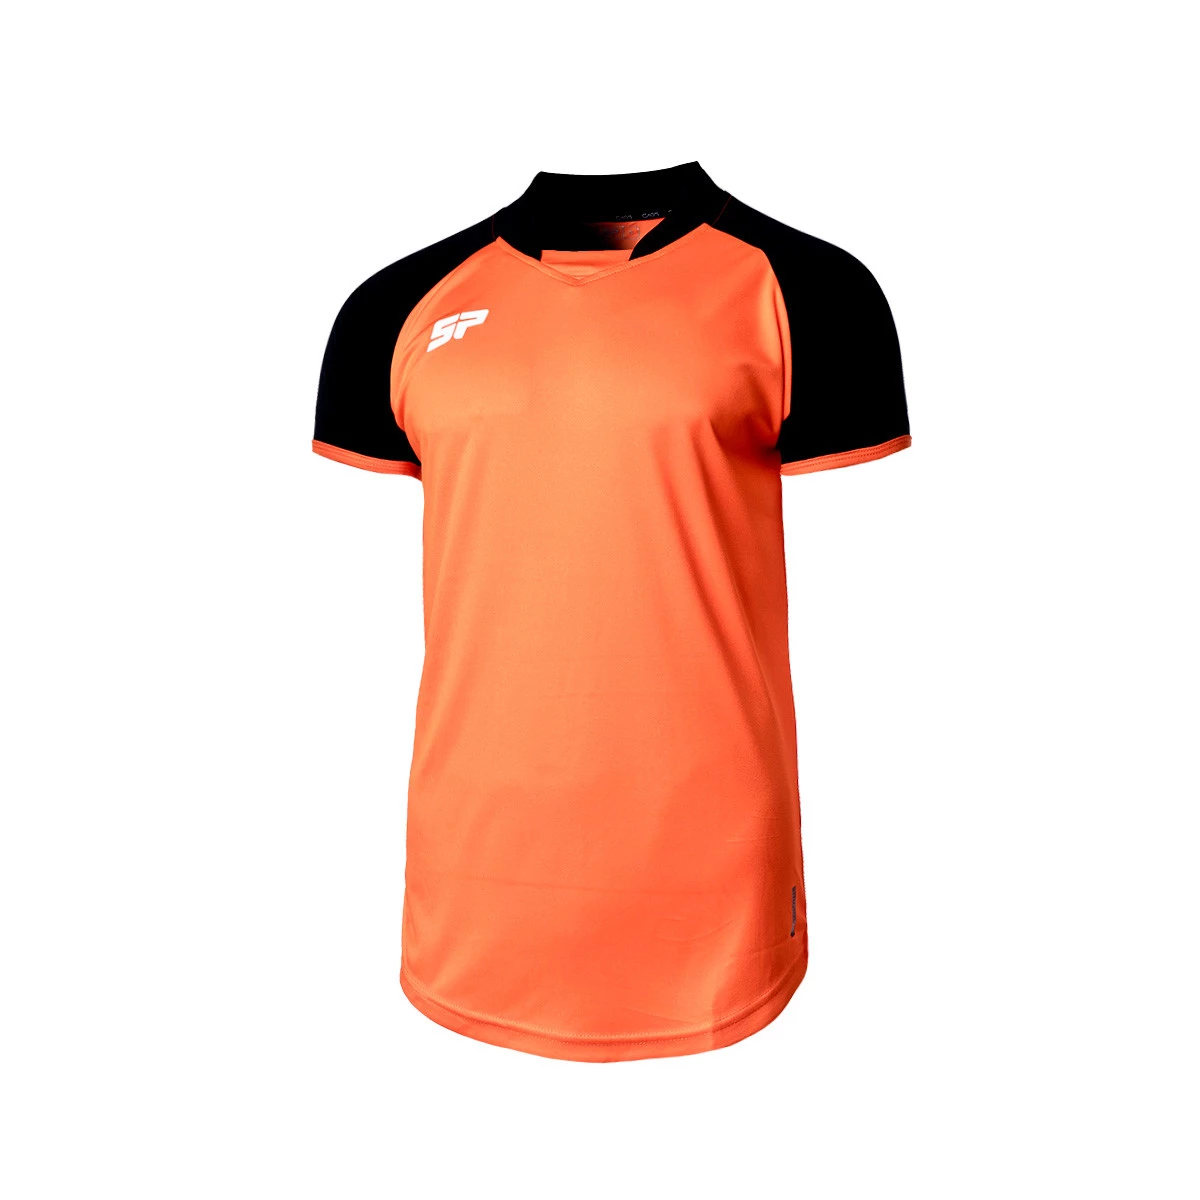 Camiseta niño naranja riñonera